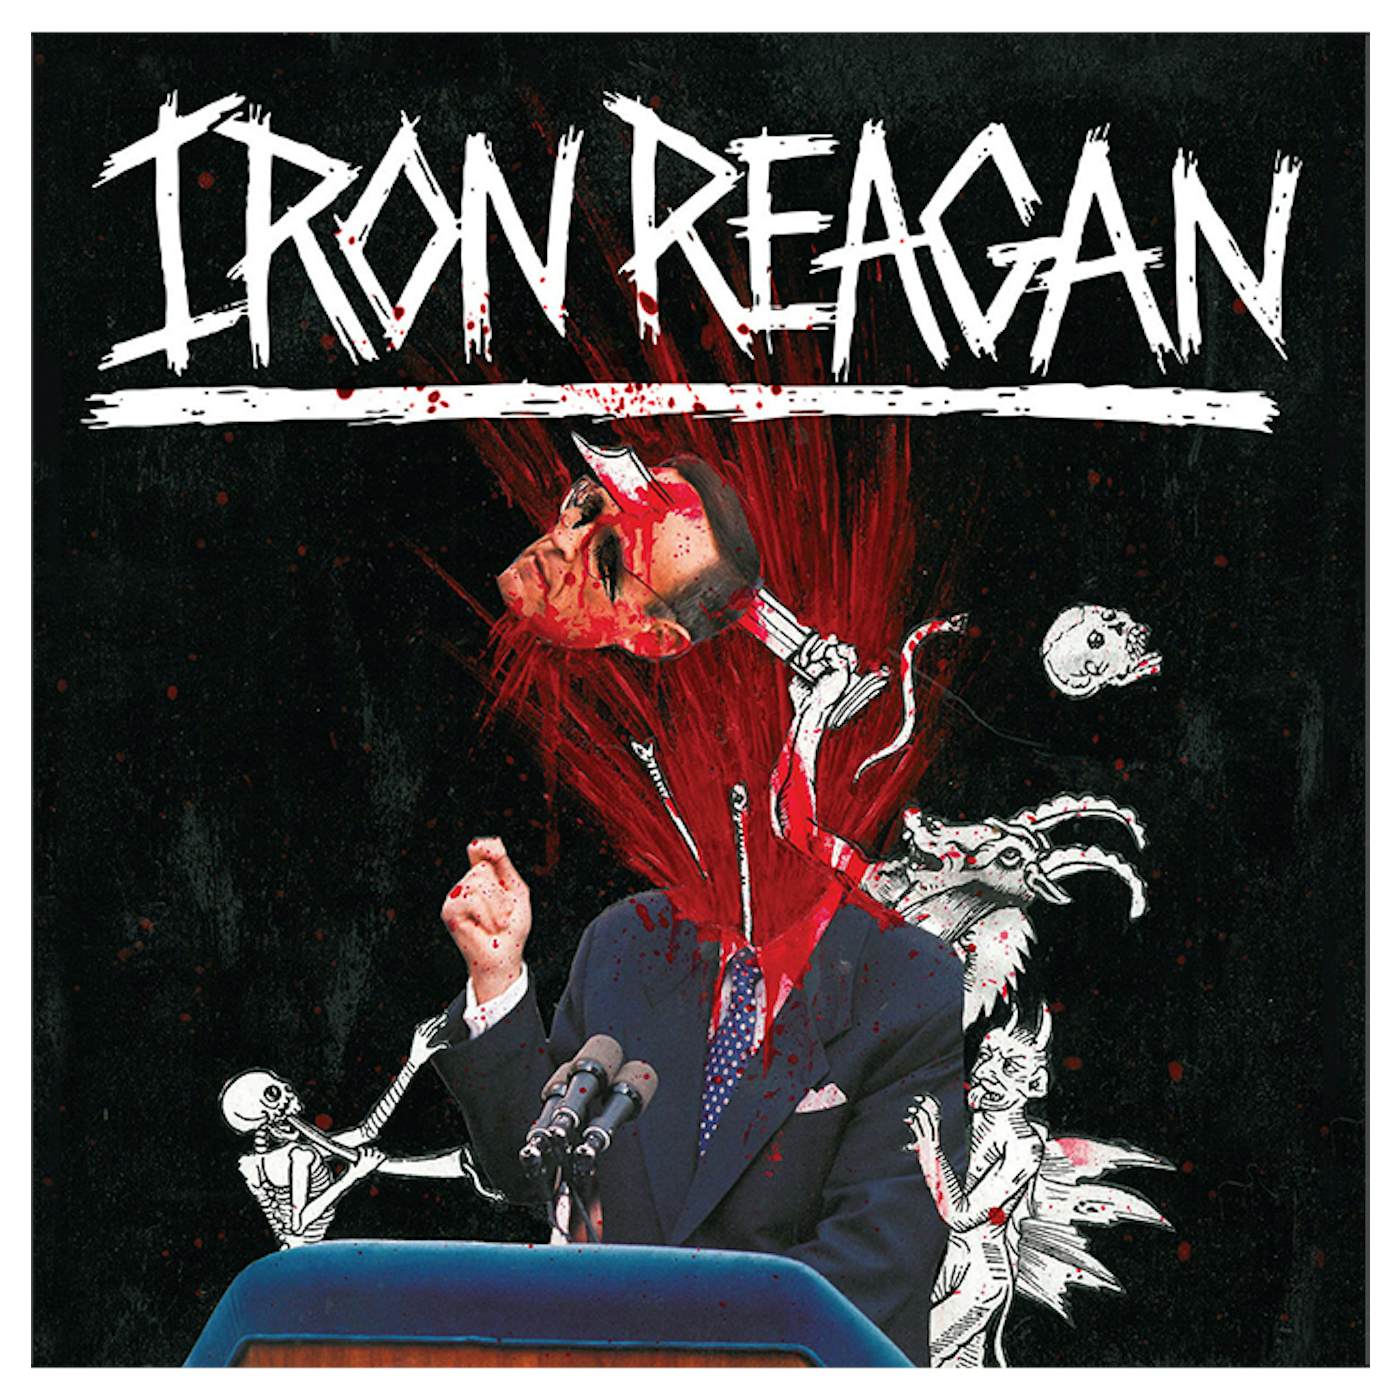 IRON REAGAN - 'The Tyranny of Will' CD